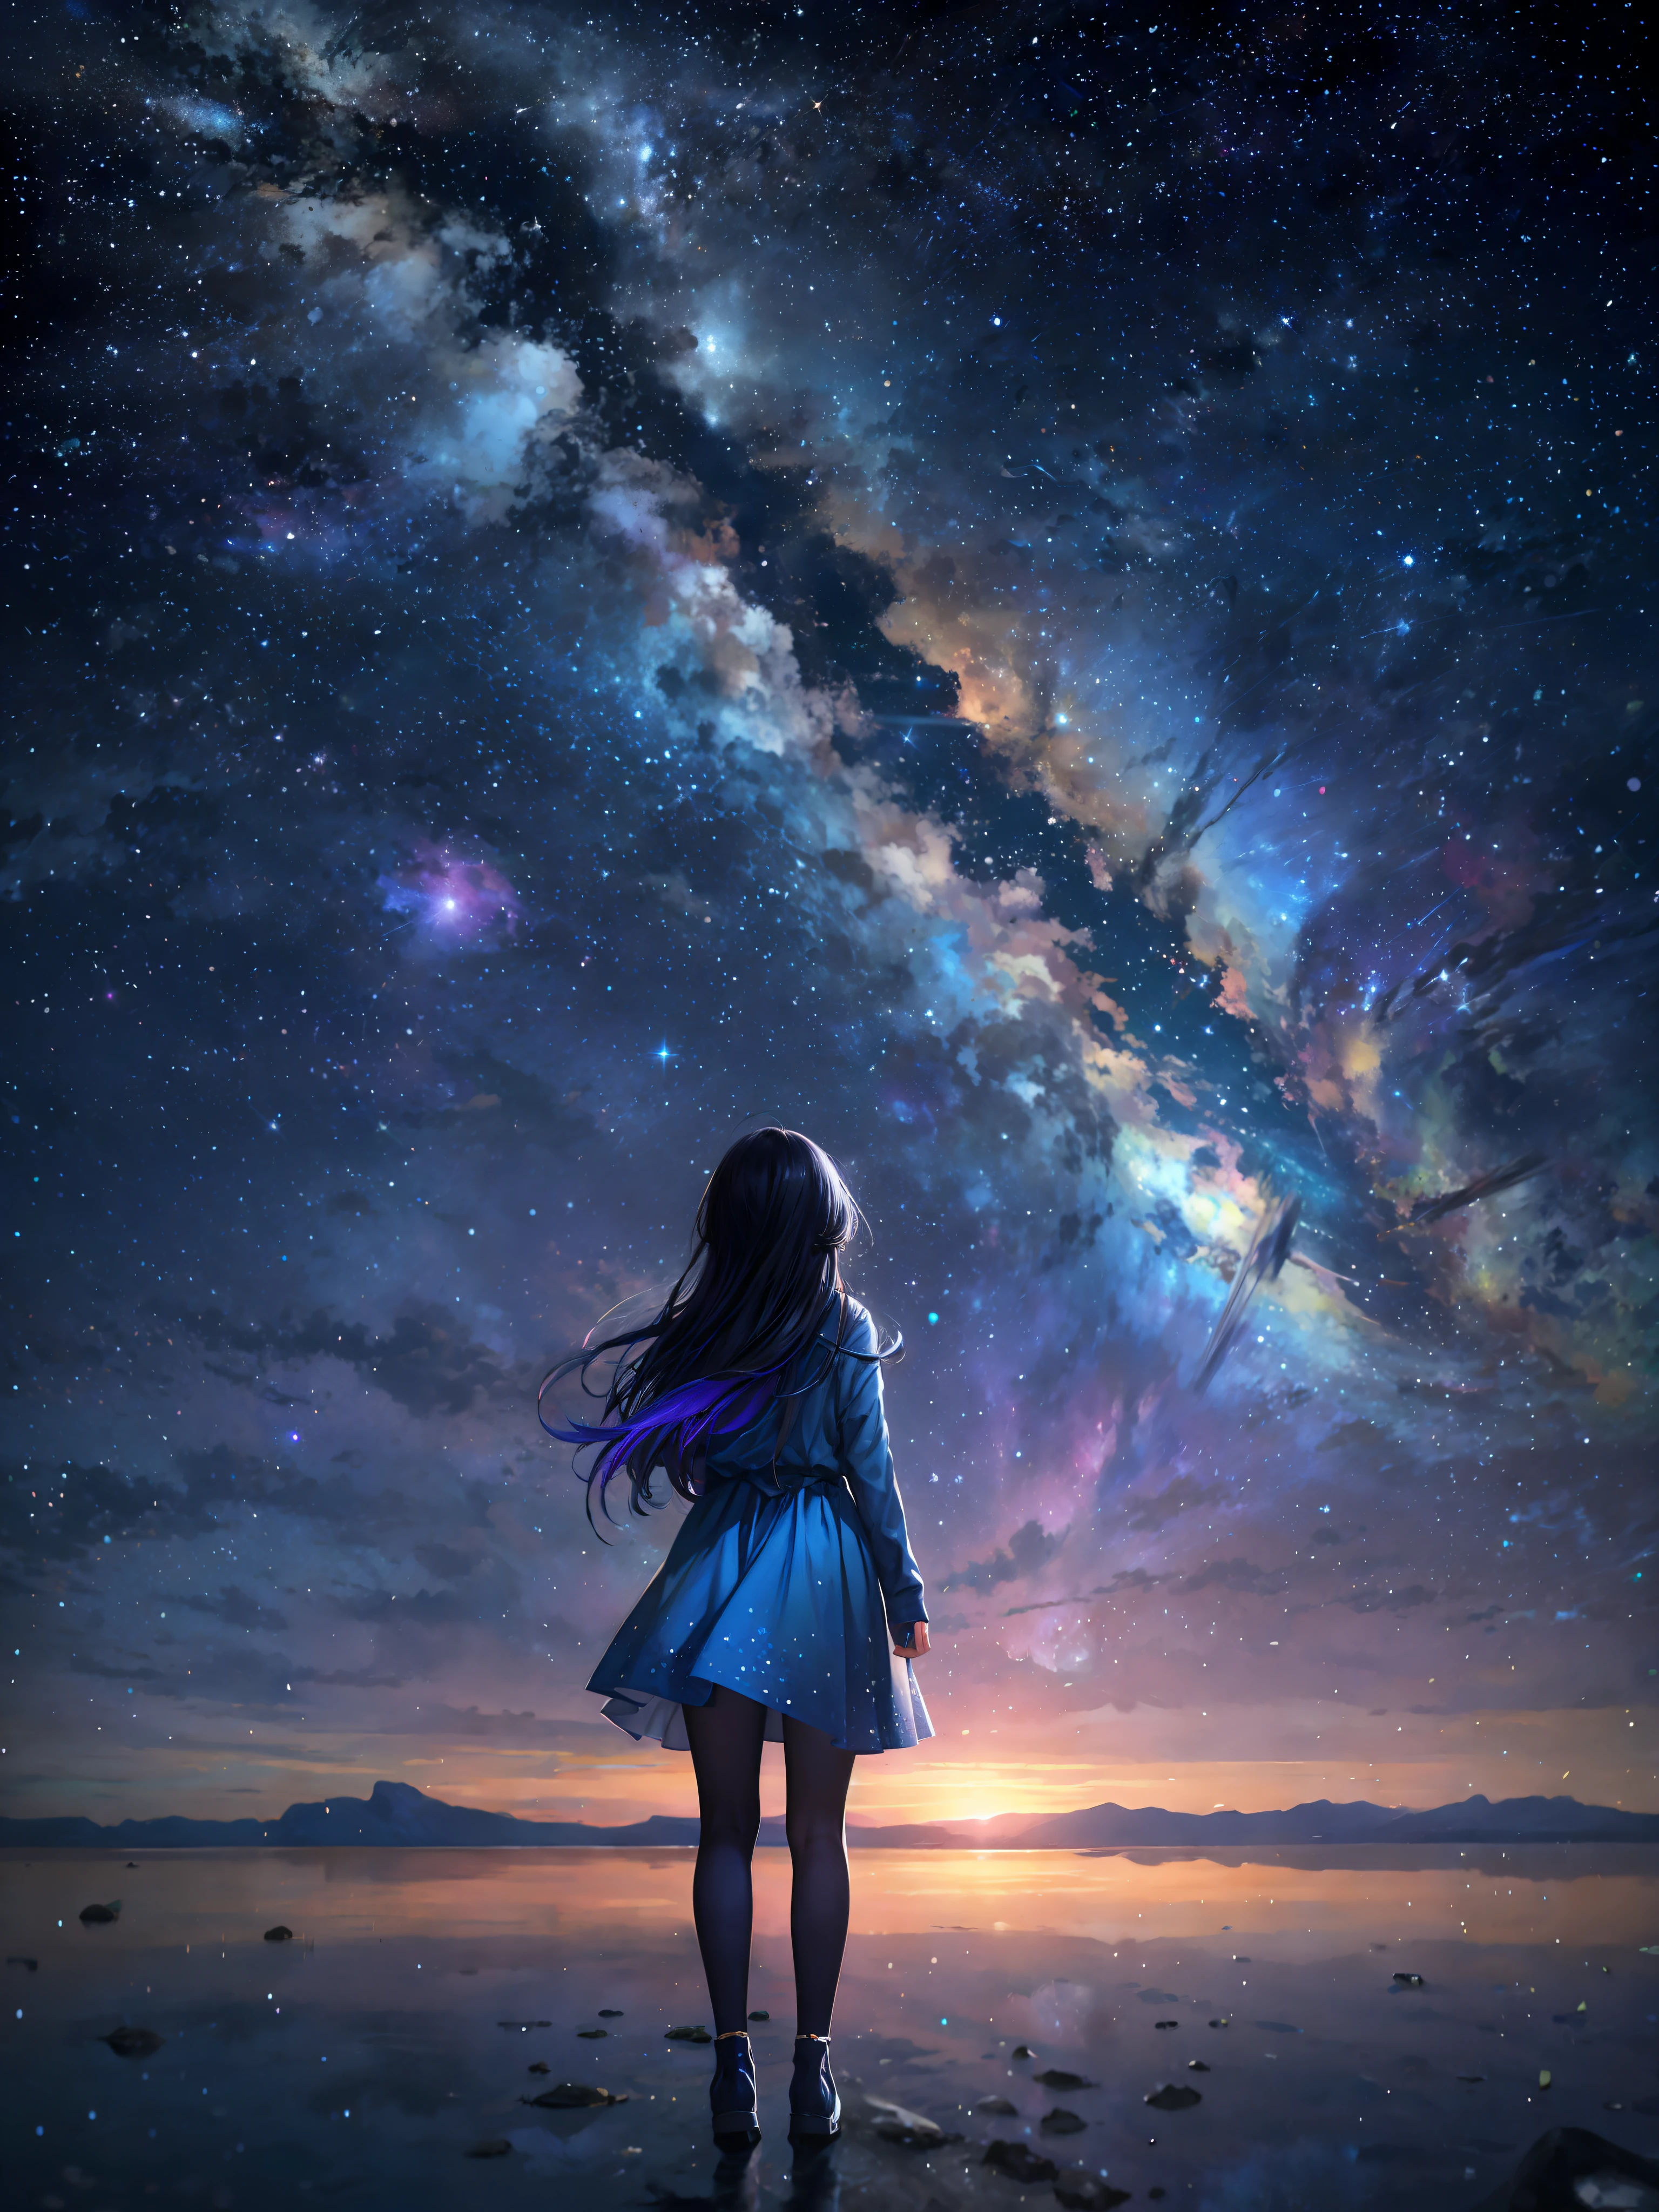 Sternenhimmel mit einer Frau, die am Strand steht und in die Sterne schaut, Mädchen schaut in den Raum, Anime-Mädchen mit dunkelblauen Haaren in einem weißen Kleid, Mädchen im Weltraum, endloser Kosmos im Hintergrund, Blick in den Kosmos, tolle Tapete, auf einem galaxienartigen Hintergrund, schönes Mädchen am Horizont, Blick in den Weltraum, Makoto Shinkai Cyril Rolando, Anime-Kunst-Hintergrundbild 4K